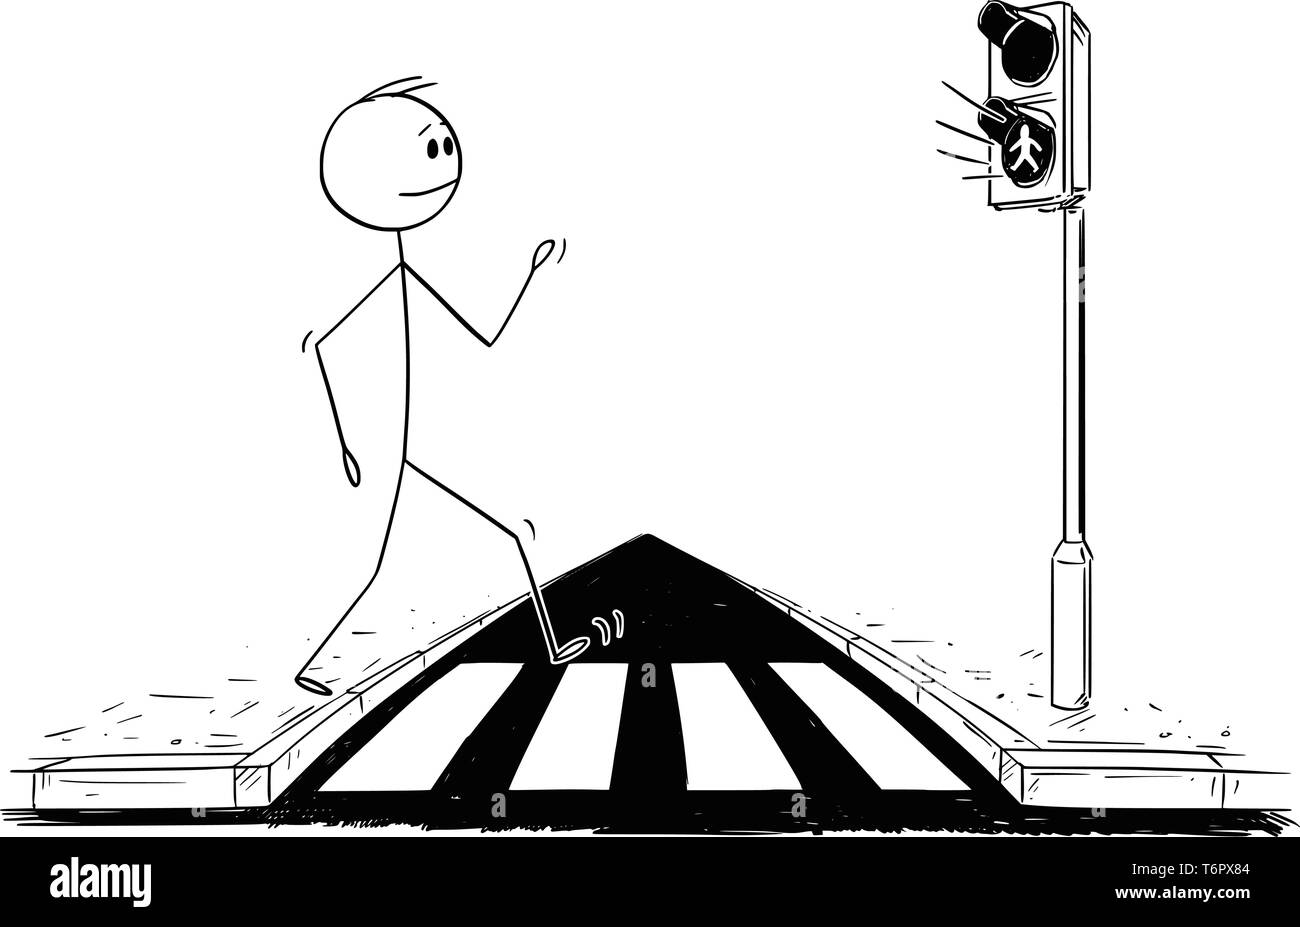 Cartoon stick figure dessin illustration conceptuelle de l'homme marche sur concordance ou de passage de piétons tout en lumière verte s'allume sur les feux. Illustration de Vecteur